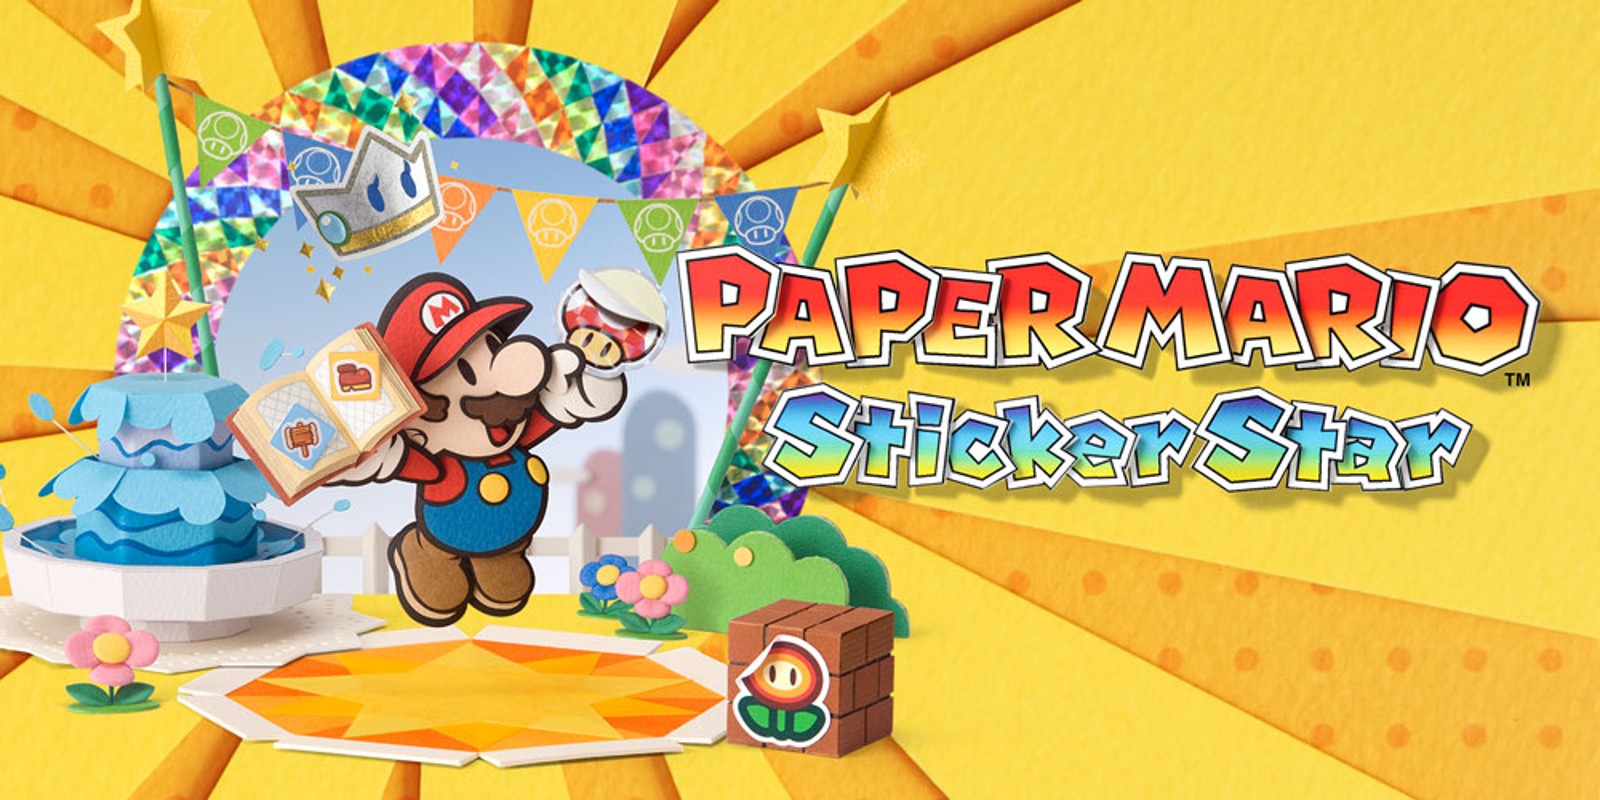 Paper Mario Sticker Star Stickers